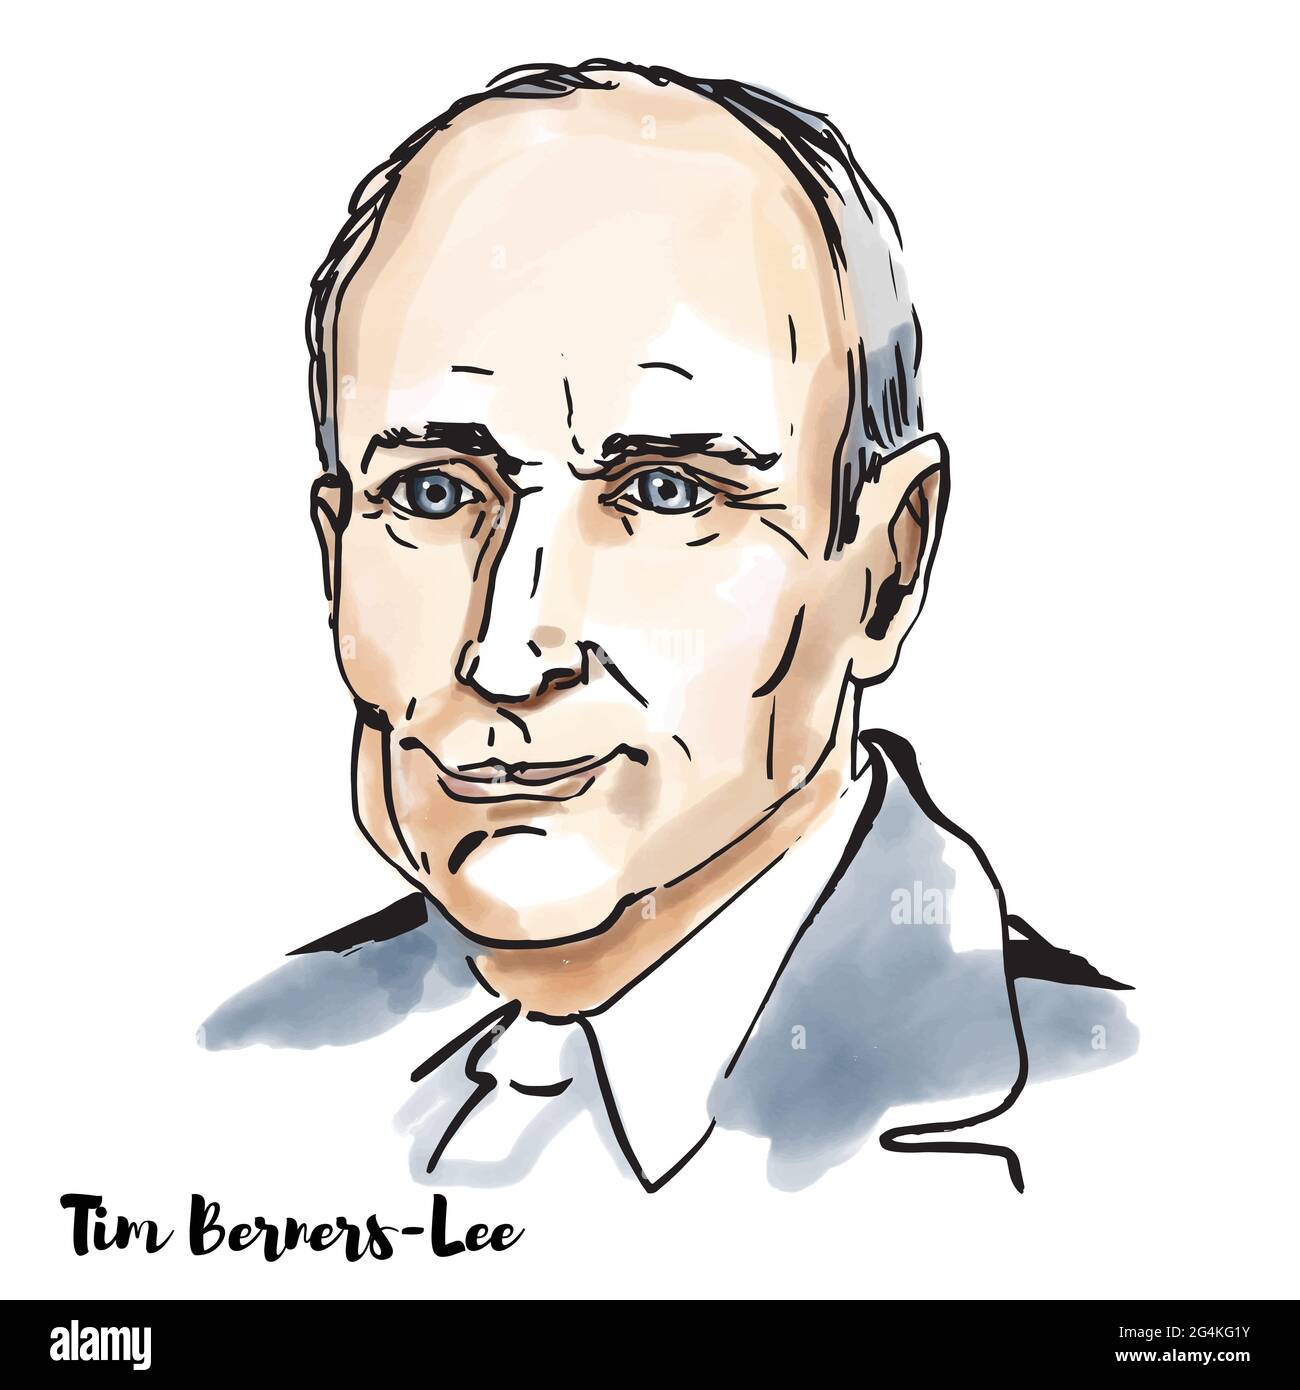 MOSKAU, RUSSLAND - 23. Februar 2020: Tim Berners Lee Aquarell-Vektorportrait mit Farbkonturen. Englischer Ingenieur und Informatiker, am bekanntesten Stock Vektor